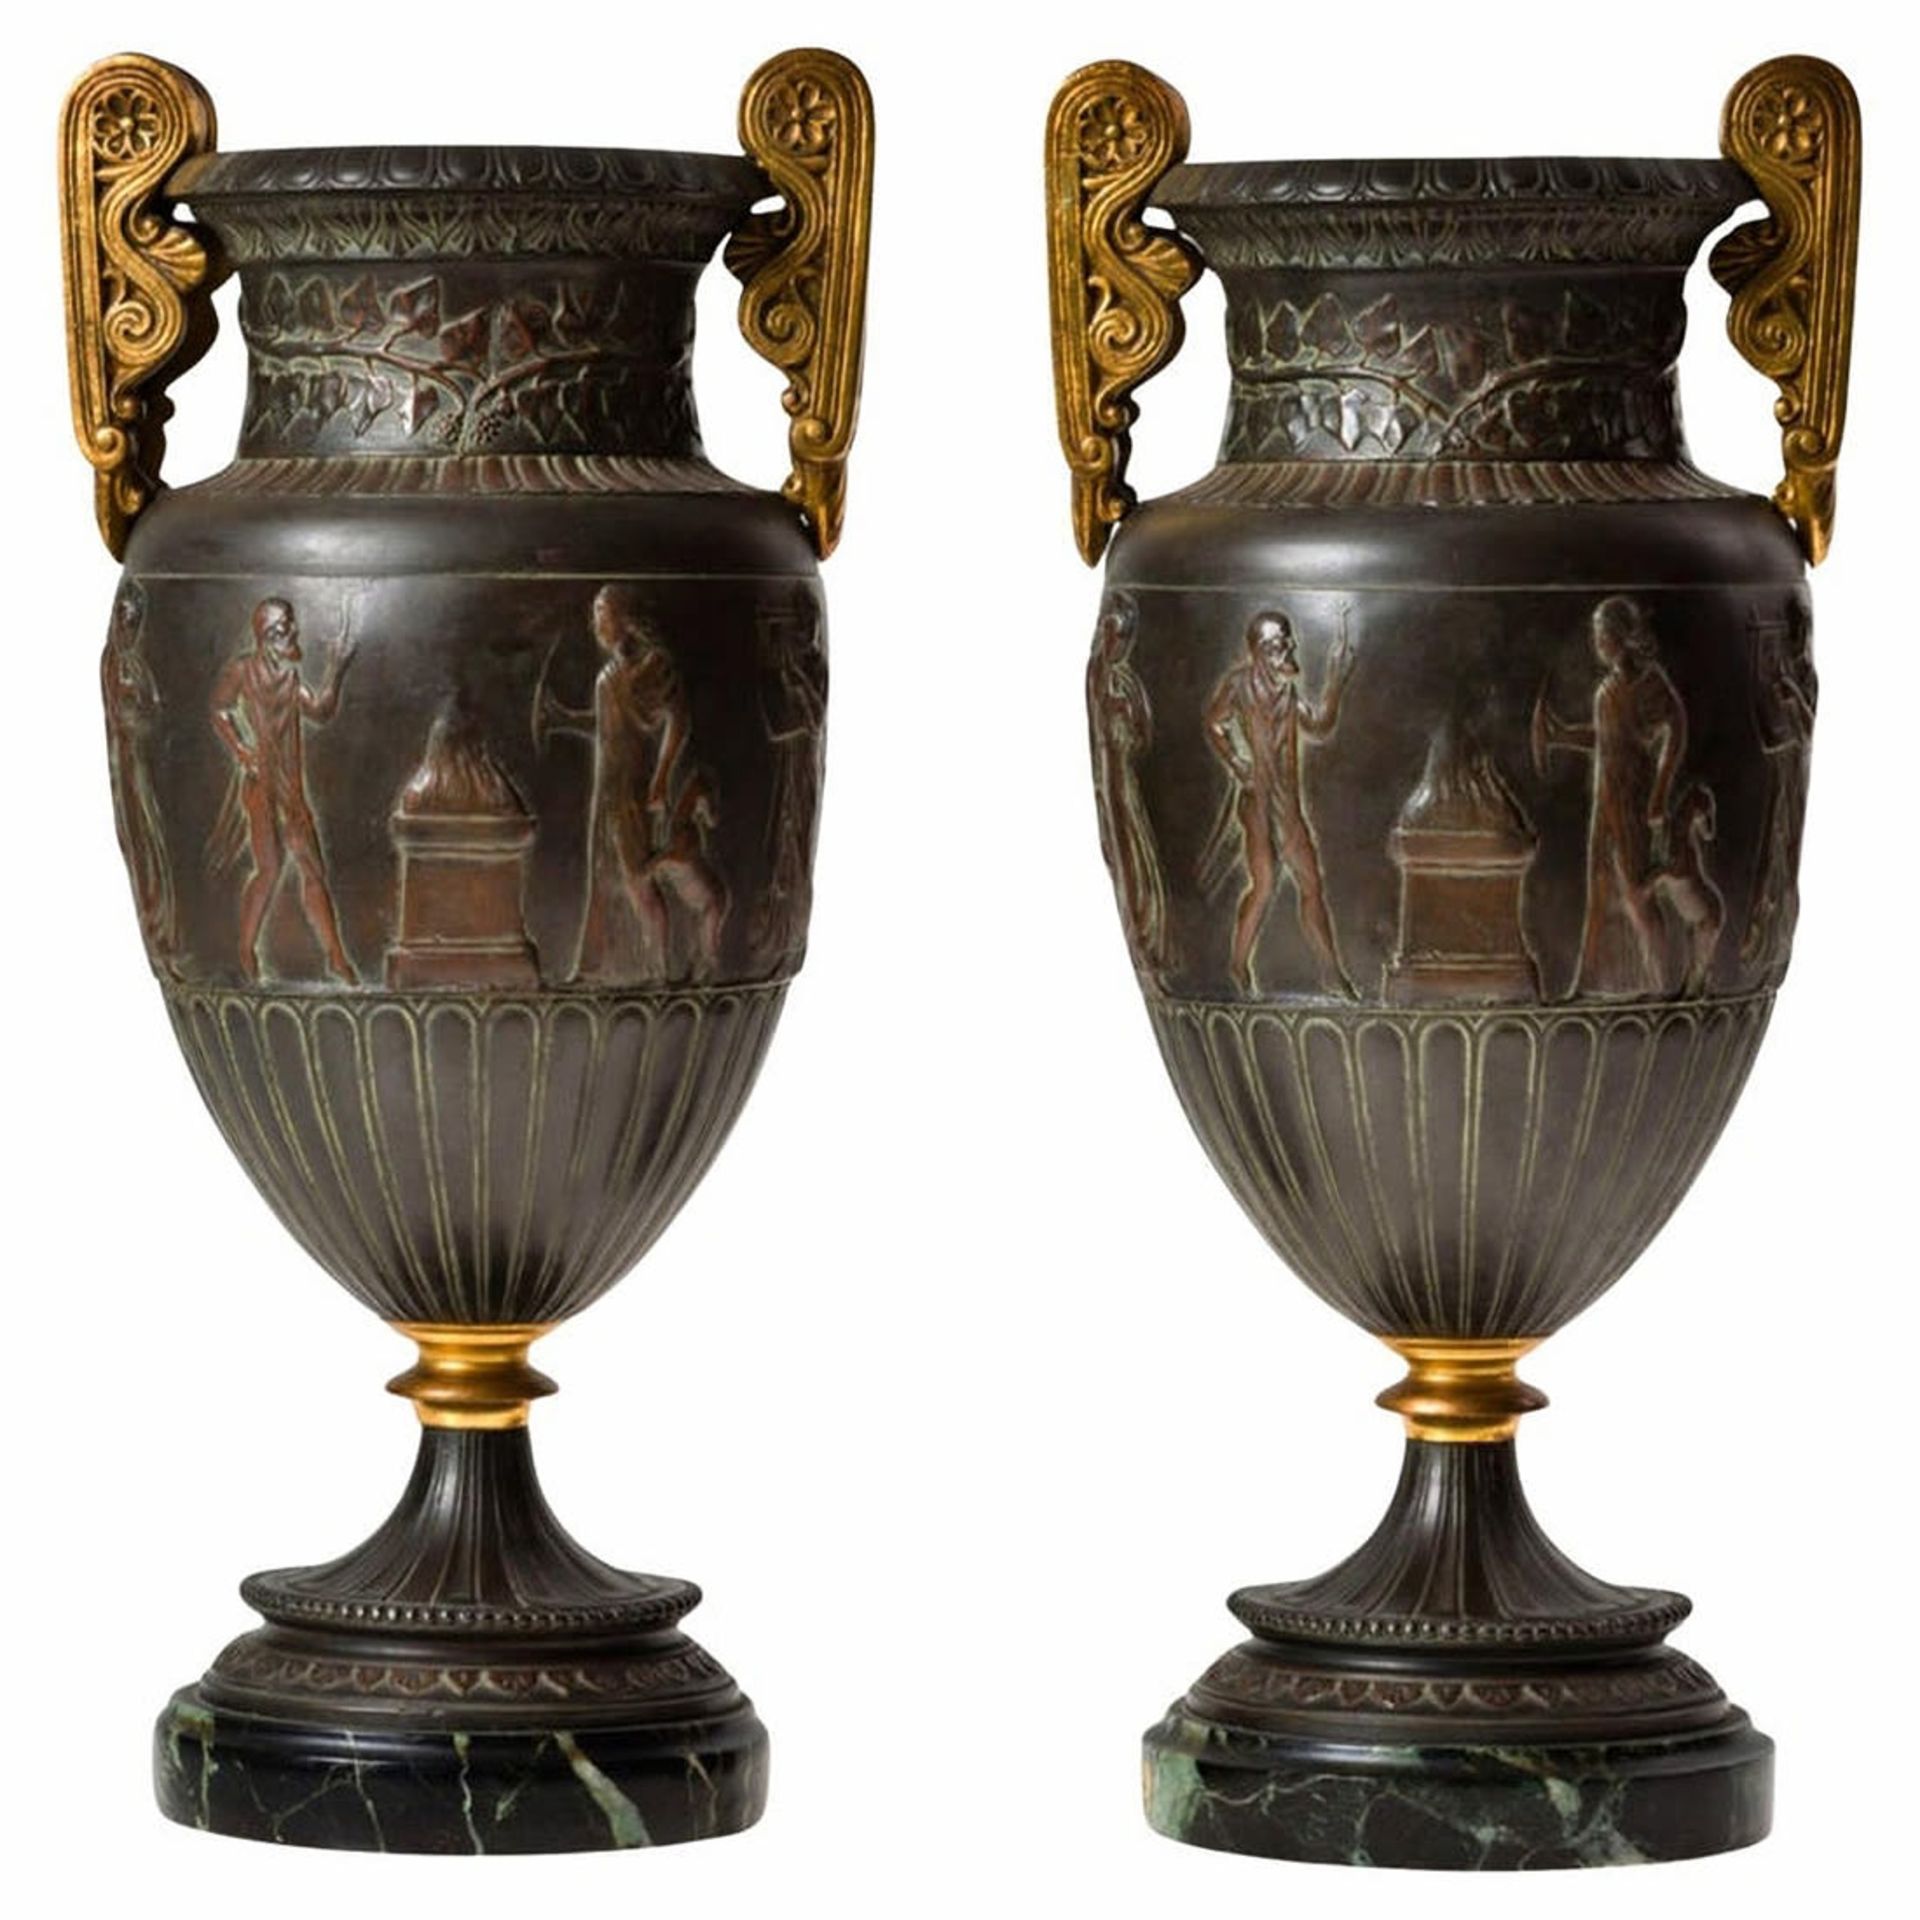 Pair of French Napoleon III Vases, 19th century